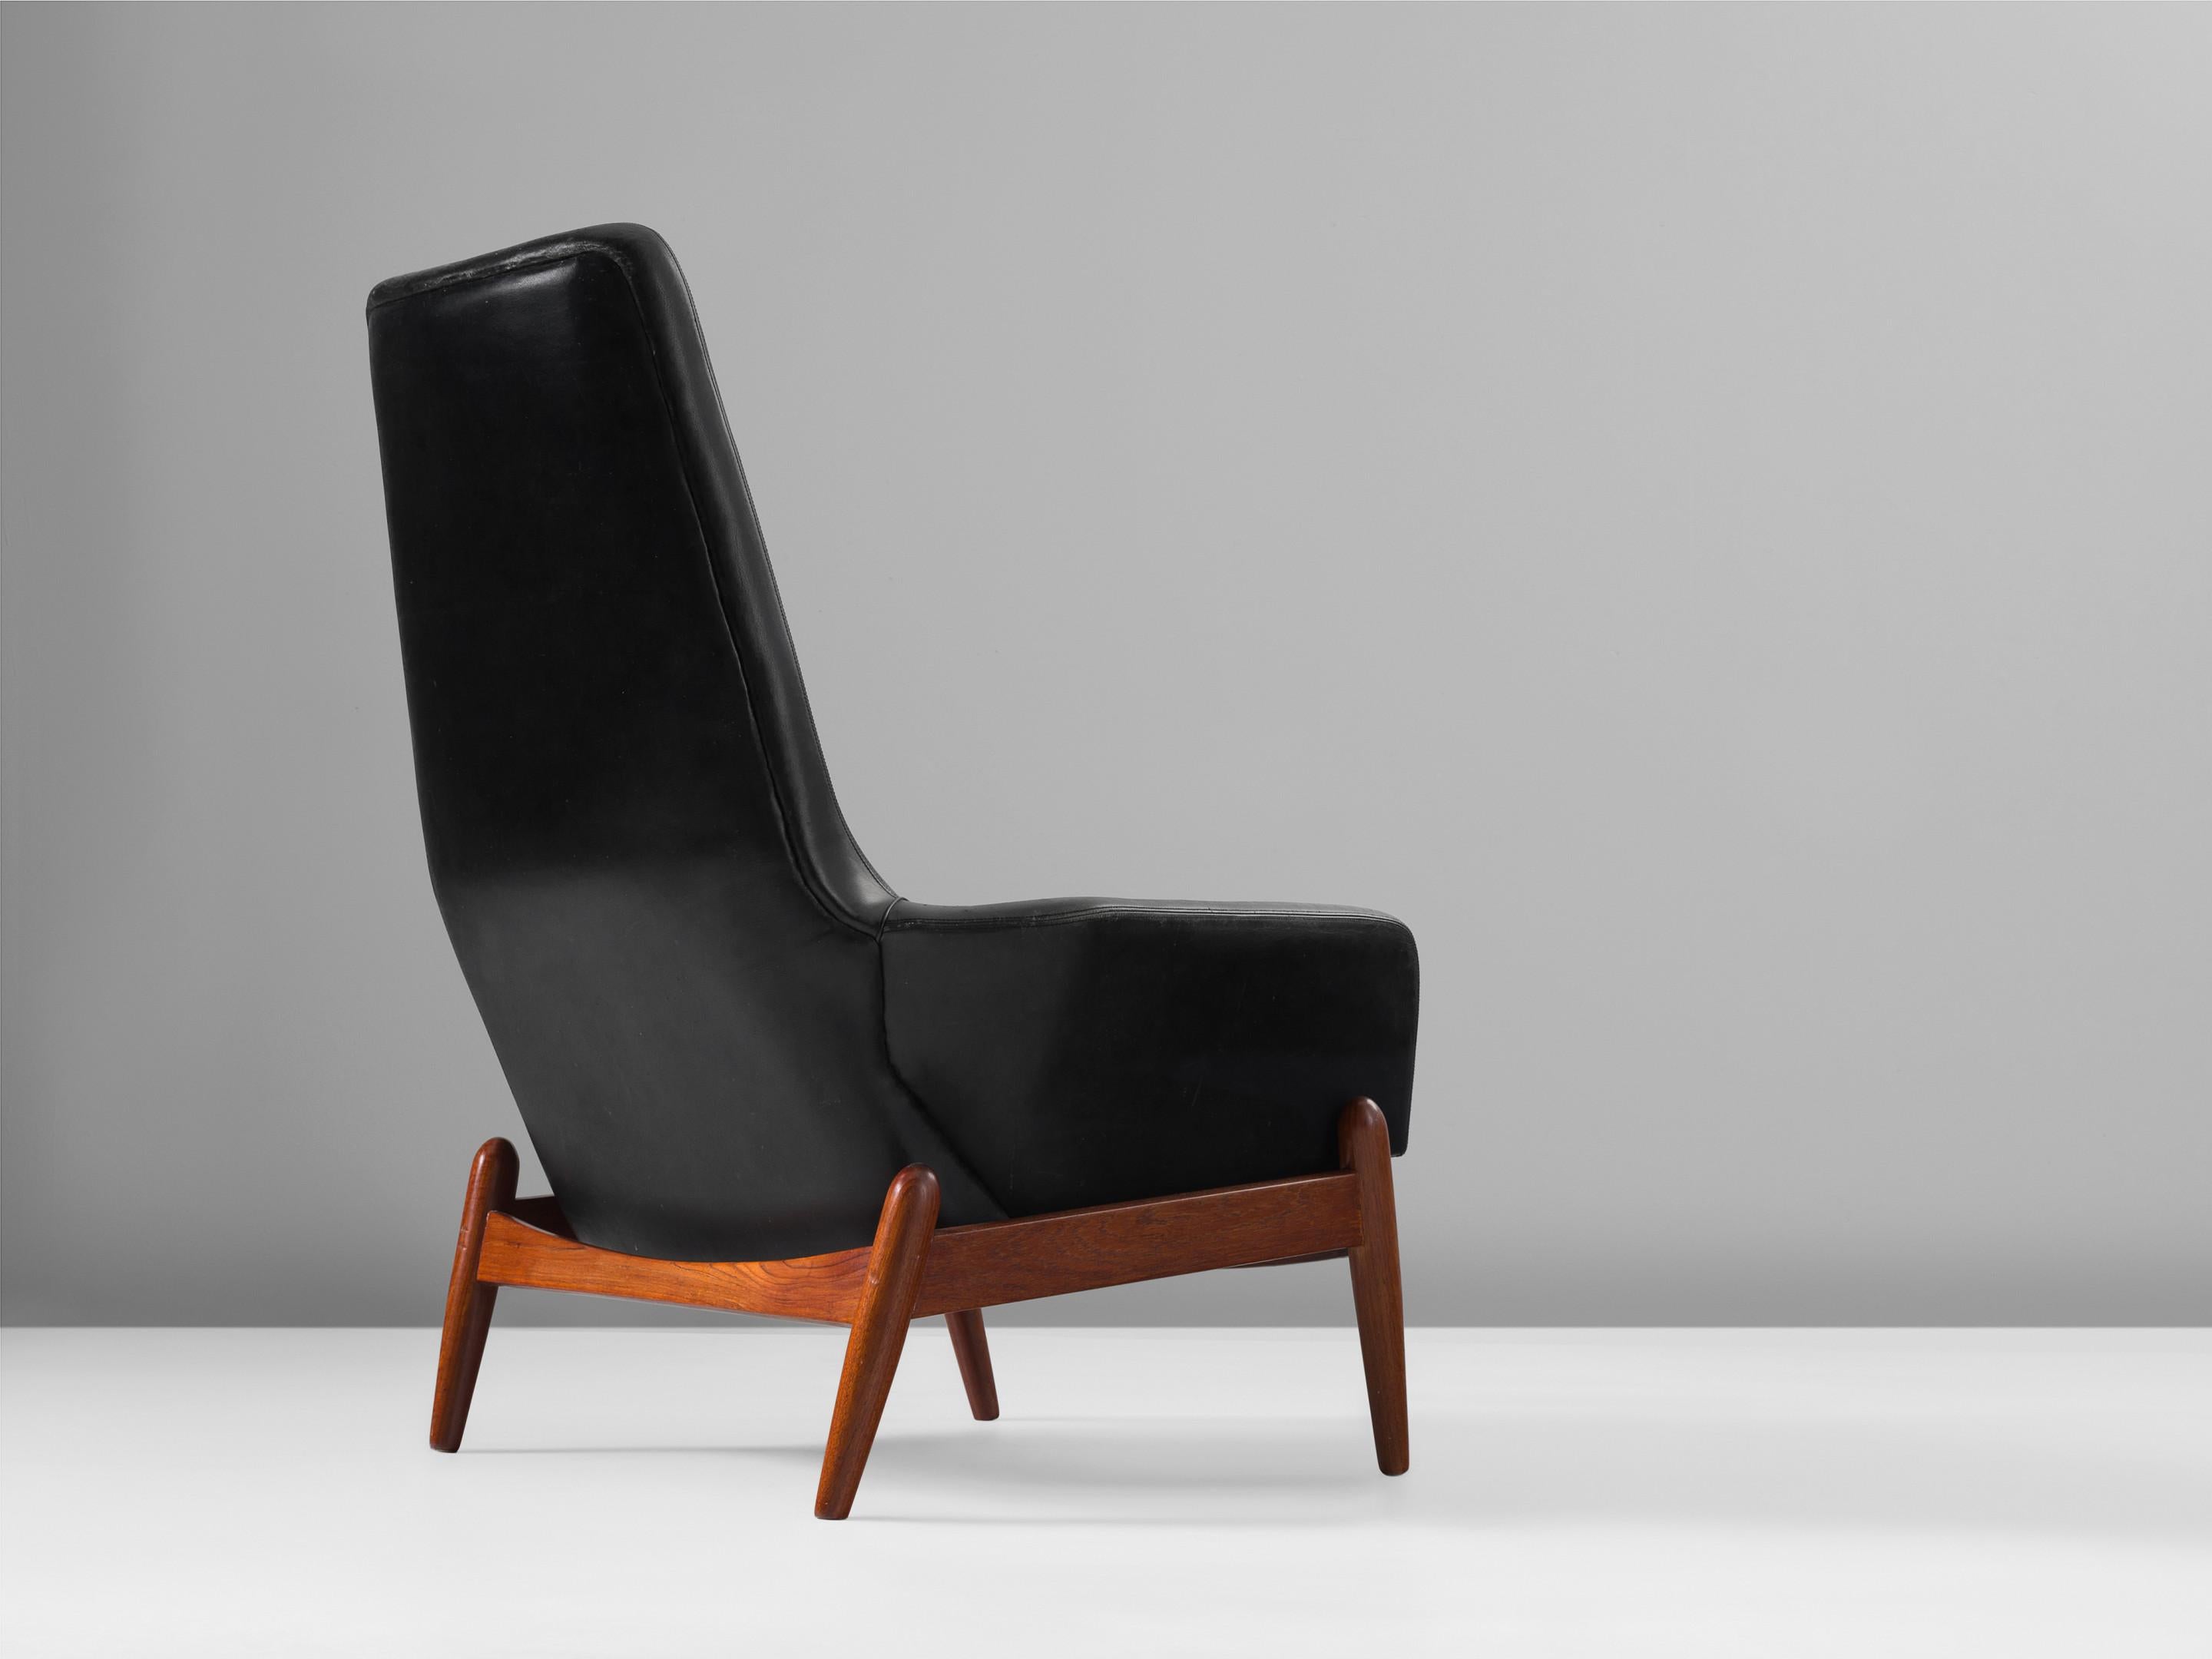 Ib Kofod-Larsen, Loungesessel Modell 'PD30', schwarzes Leder, Teakholz, Dänemark, 1960er Jahre.

Der Designer dieses Stuhls, Ib Kofod-Larsen (1921-2003), ist bekannt für sein unverwechselbares Design mit komfortablen Materialien und schlichten